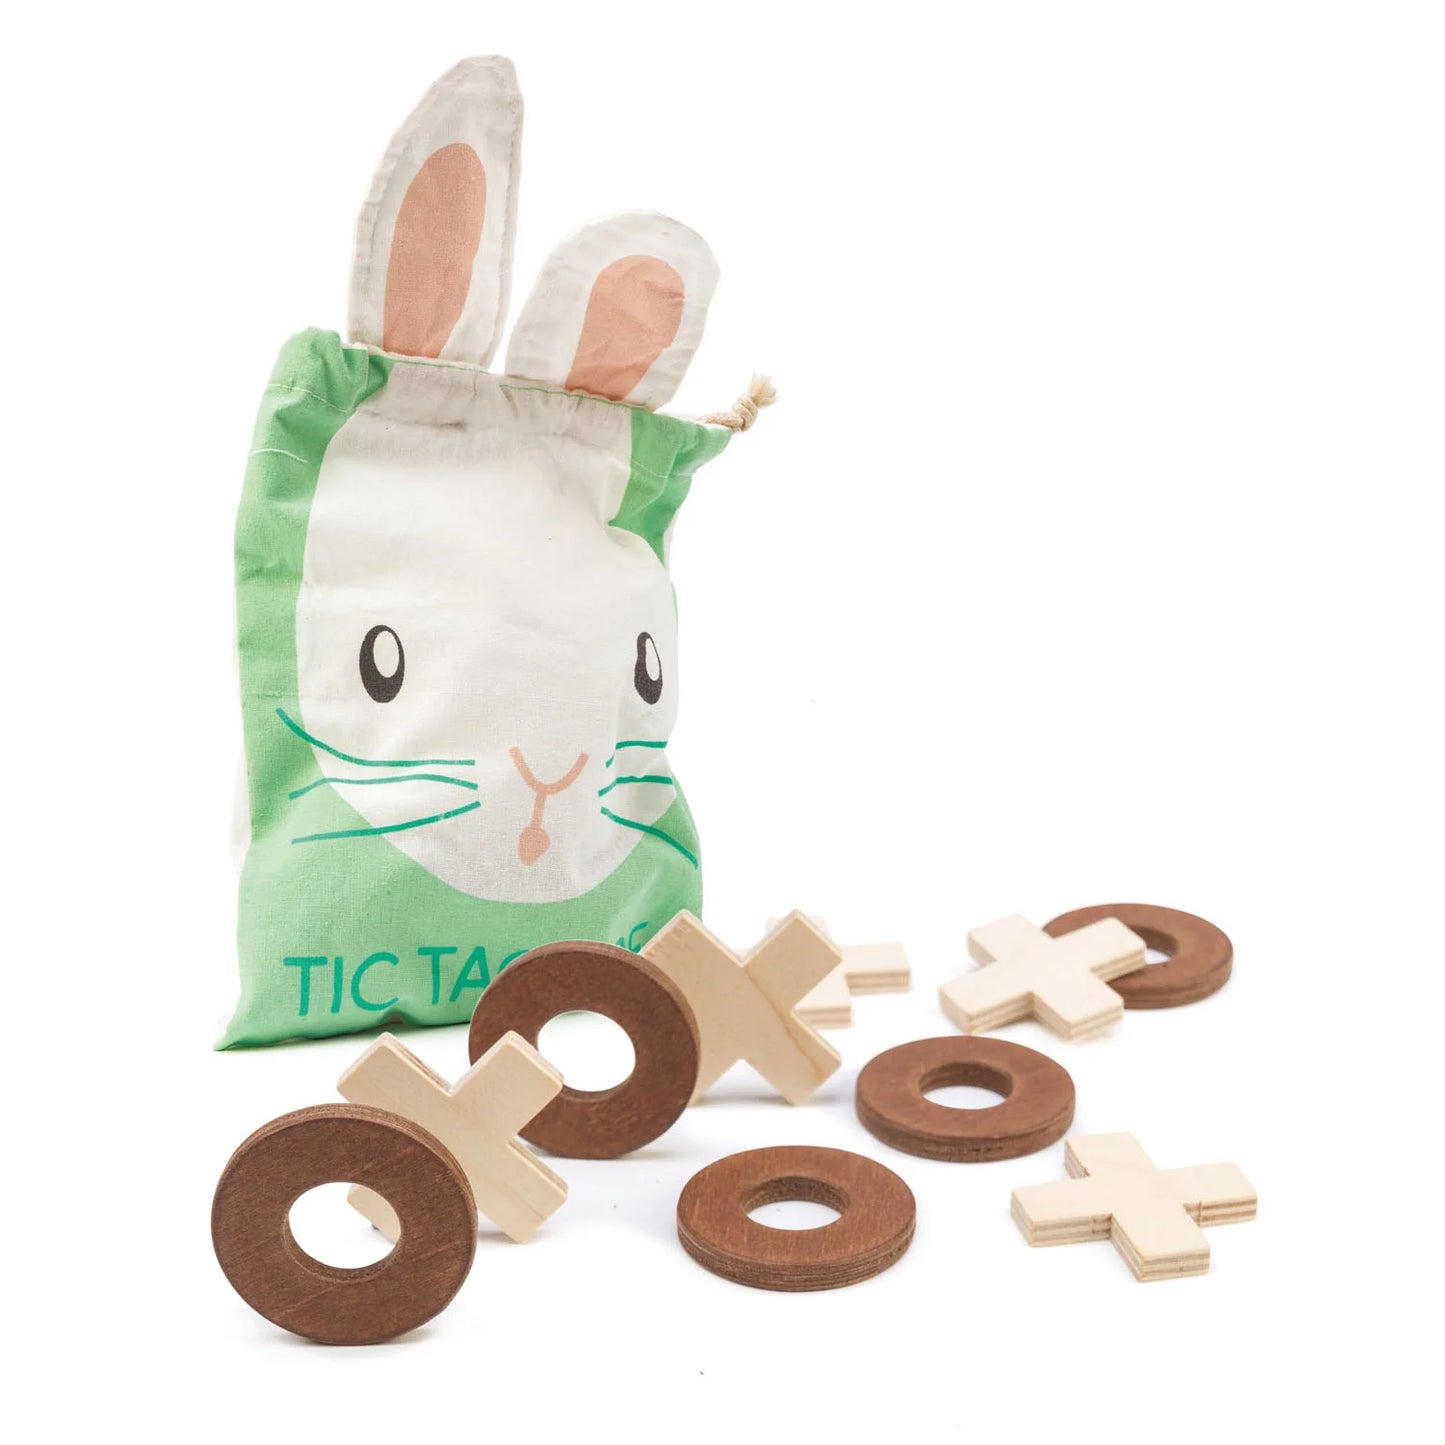 Bunny Tic Tac Toe Set